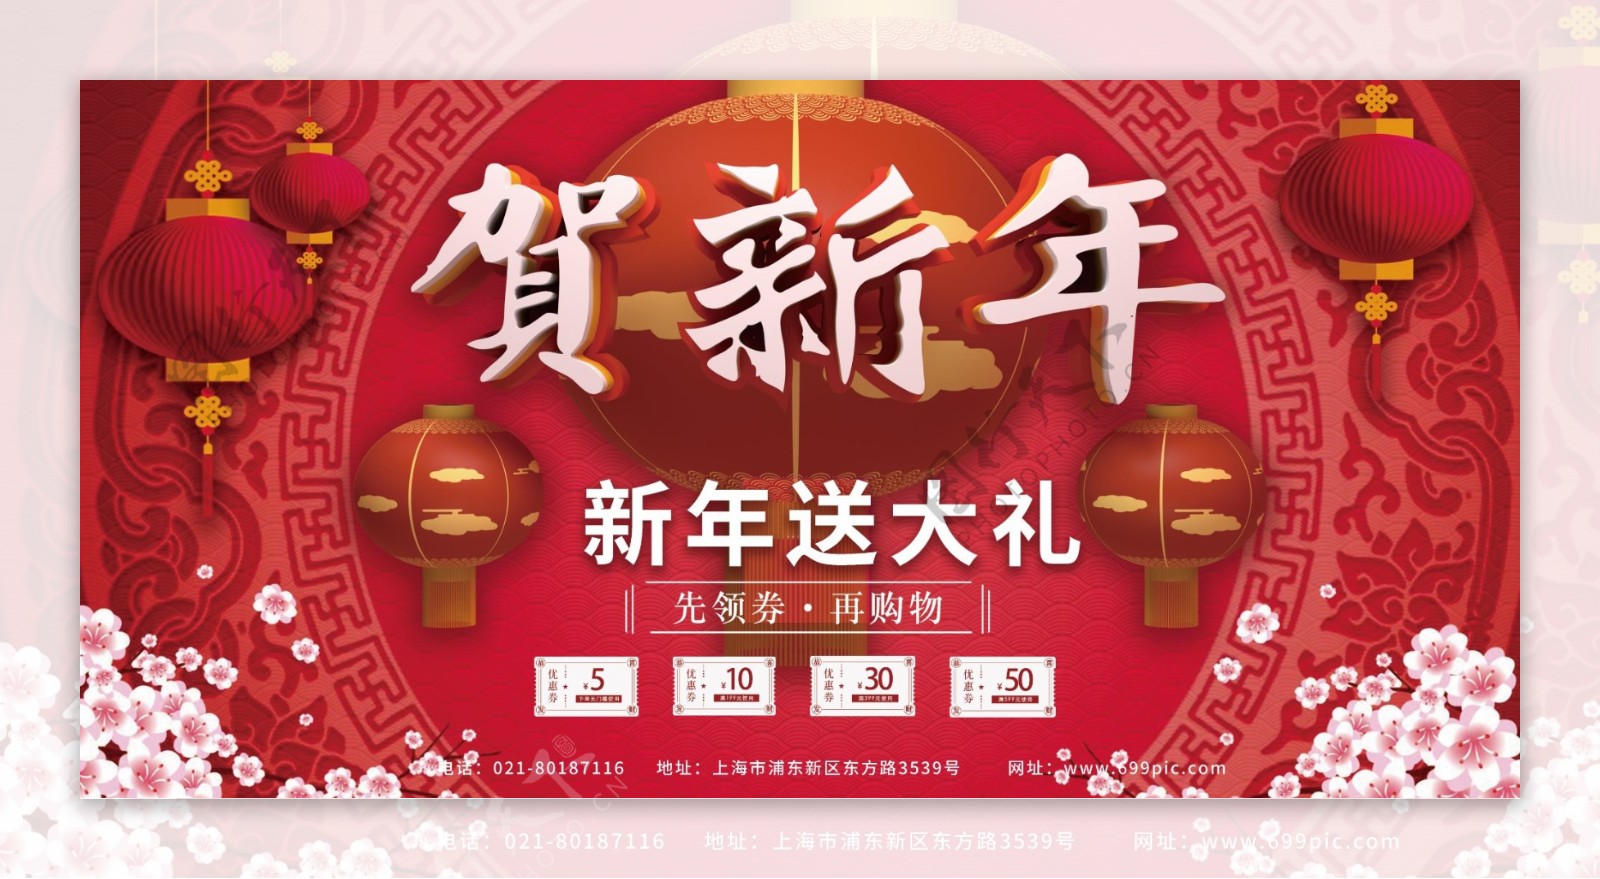 贺新年节日红色中国风商场展板